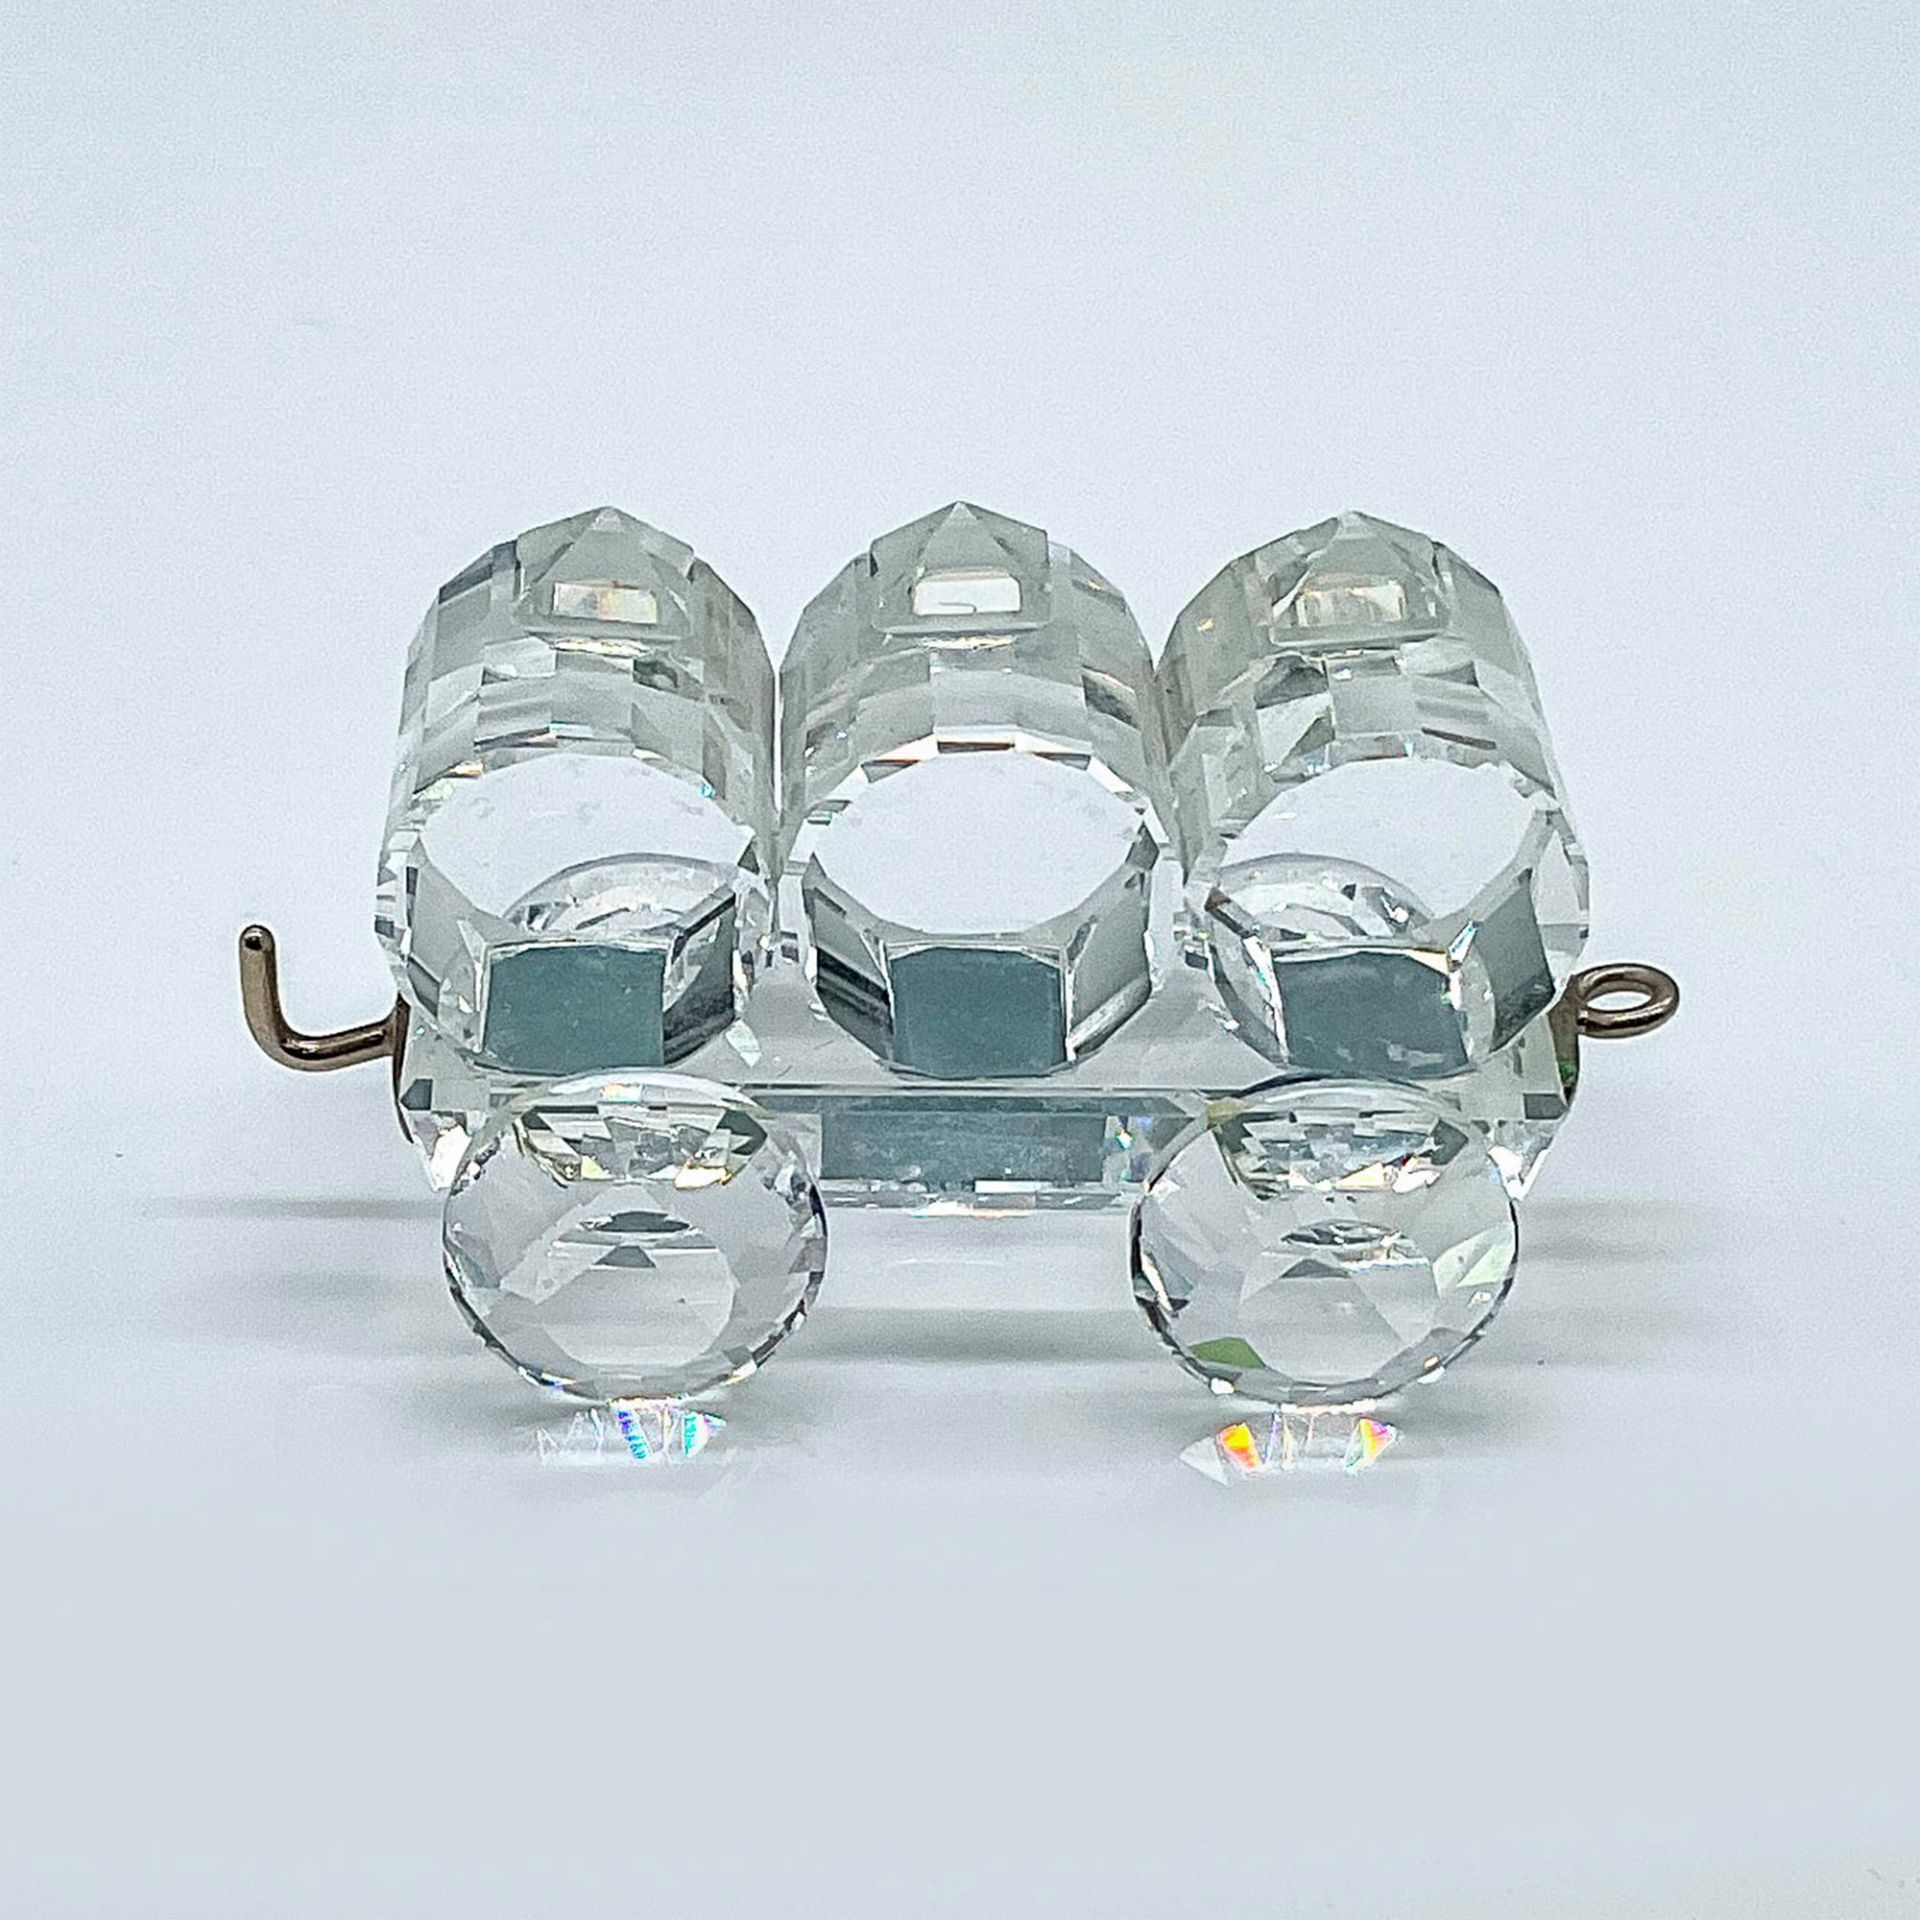 Swarovski Silver Crystal Figurine, Petrol Wagon Train Car